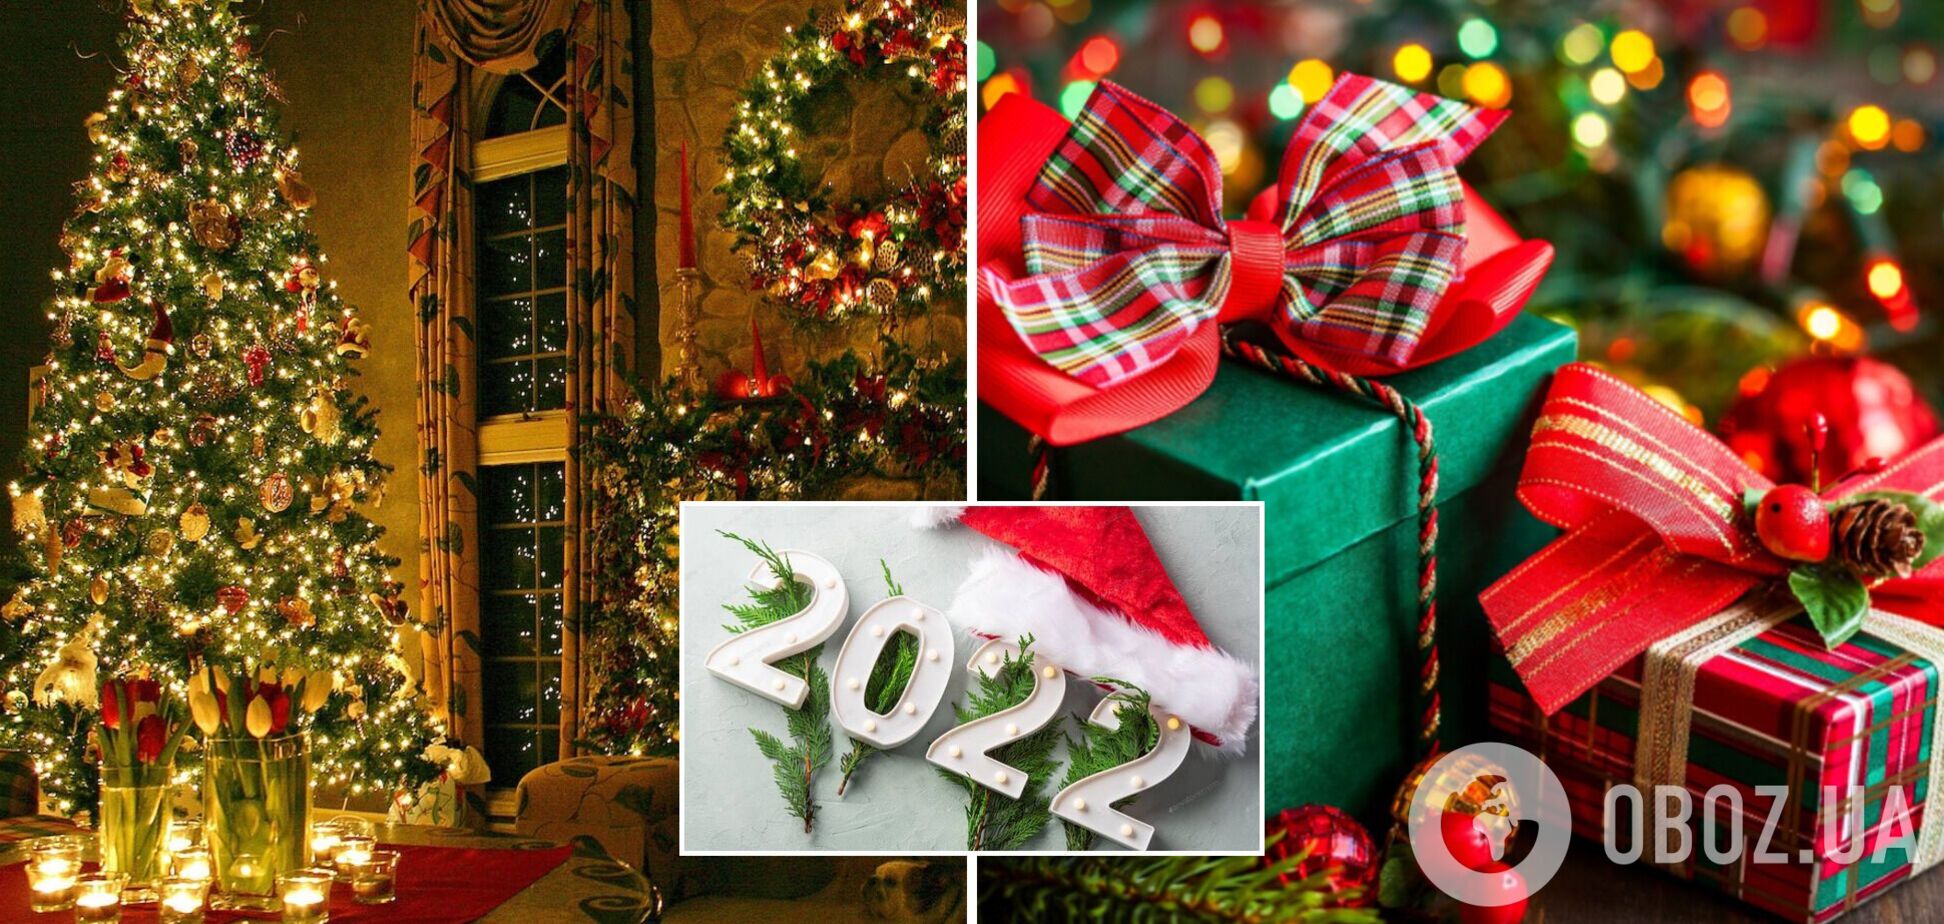 Українці розповіли, які подарунки найбільше хотіли б отримати на Новий рік: результати соцопитування